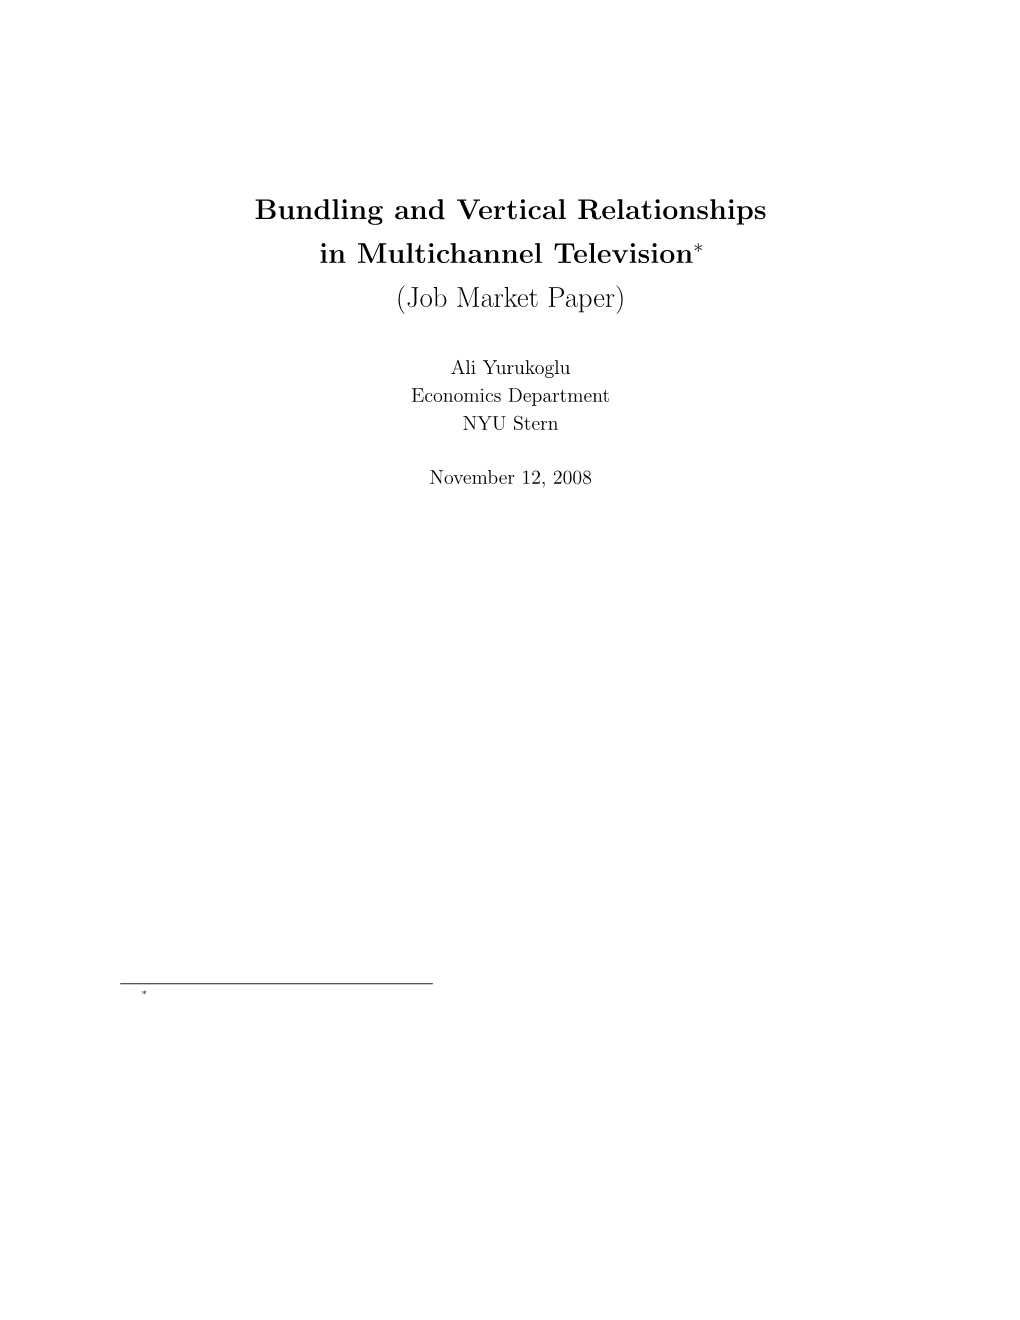 Bundling and Vertical Relationships in Multichannel Television∗ (Job Market Paper)